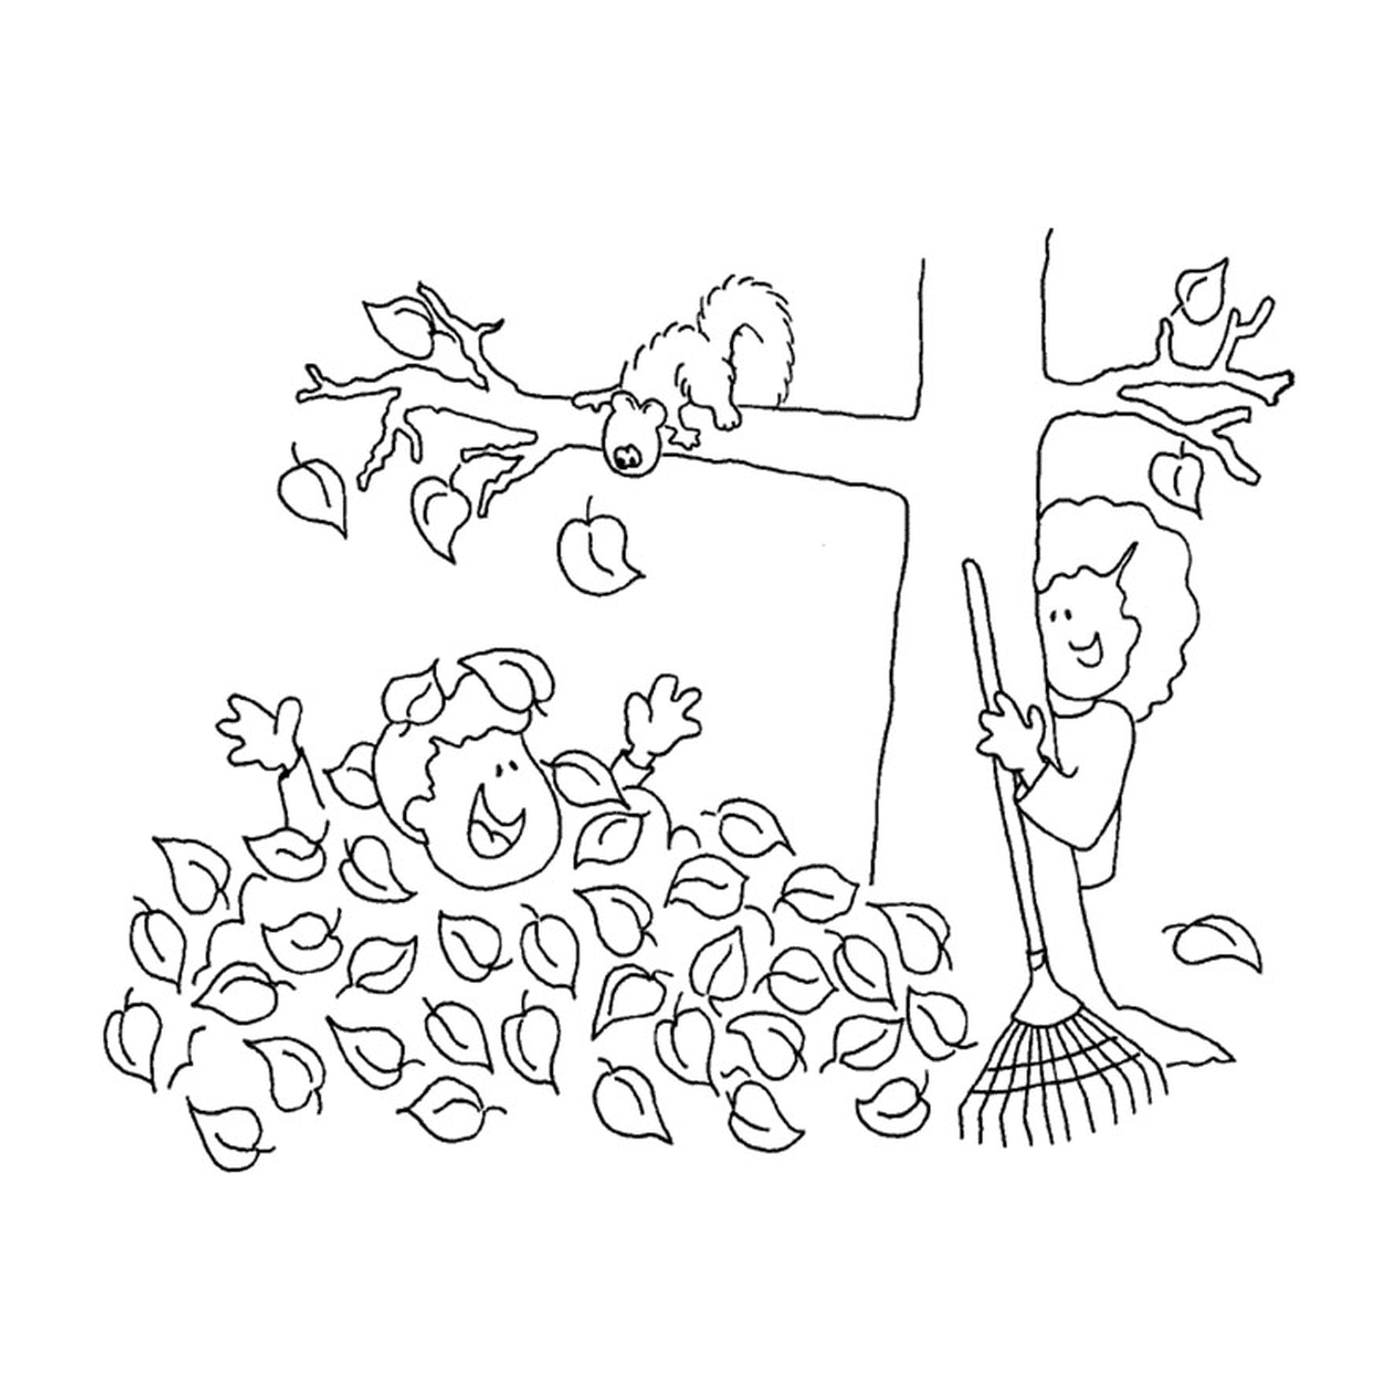  Мальчик и белка играют в мертвых листьях 